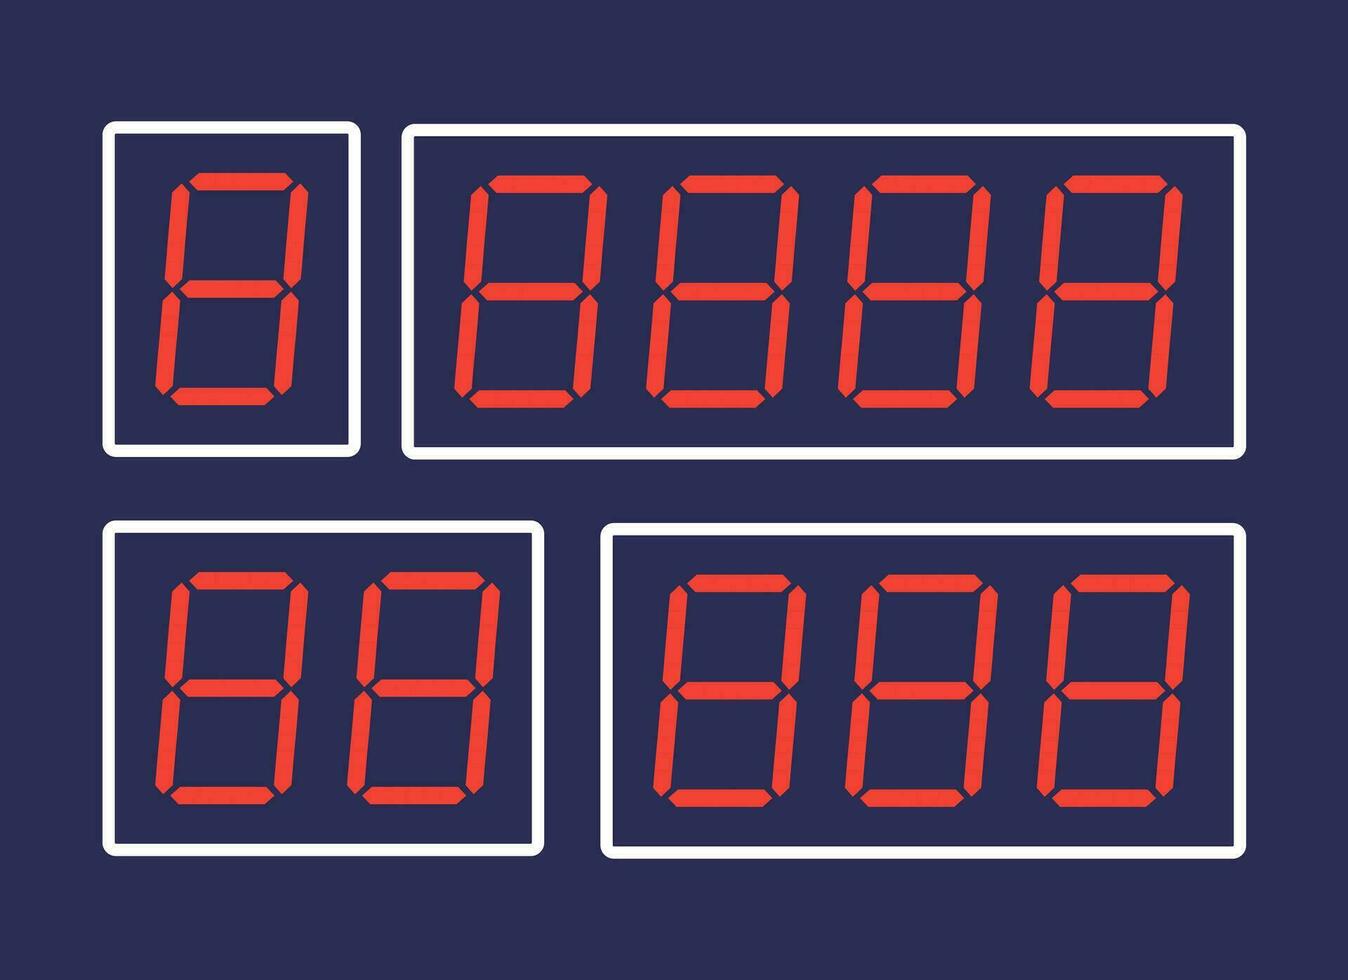 een vector illustratie van rood digitaal getallen ontworpen voor digitaal alarm klokken of tijdopnemers, gepresenteerd tegen een donker achtergrond.